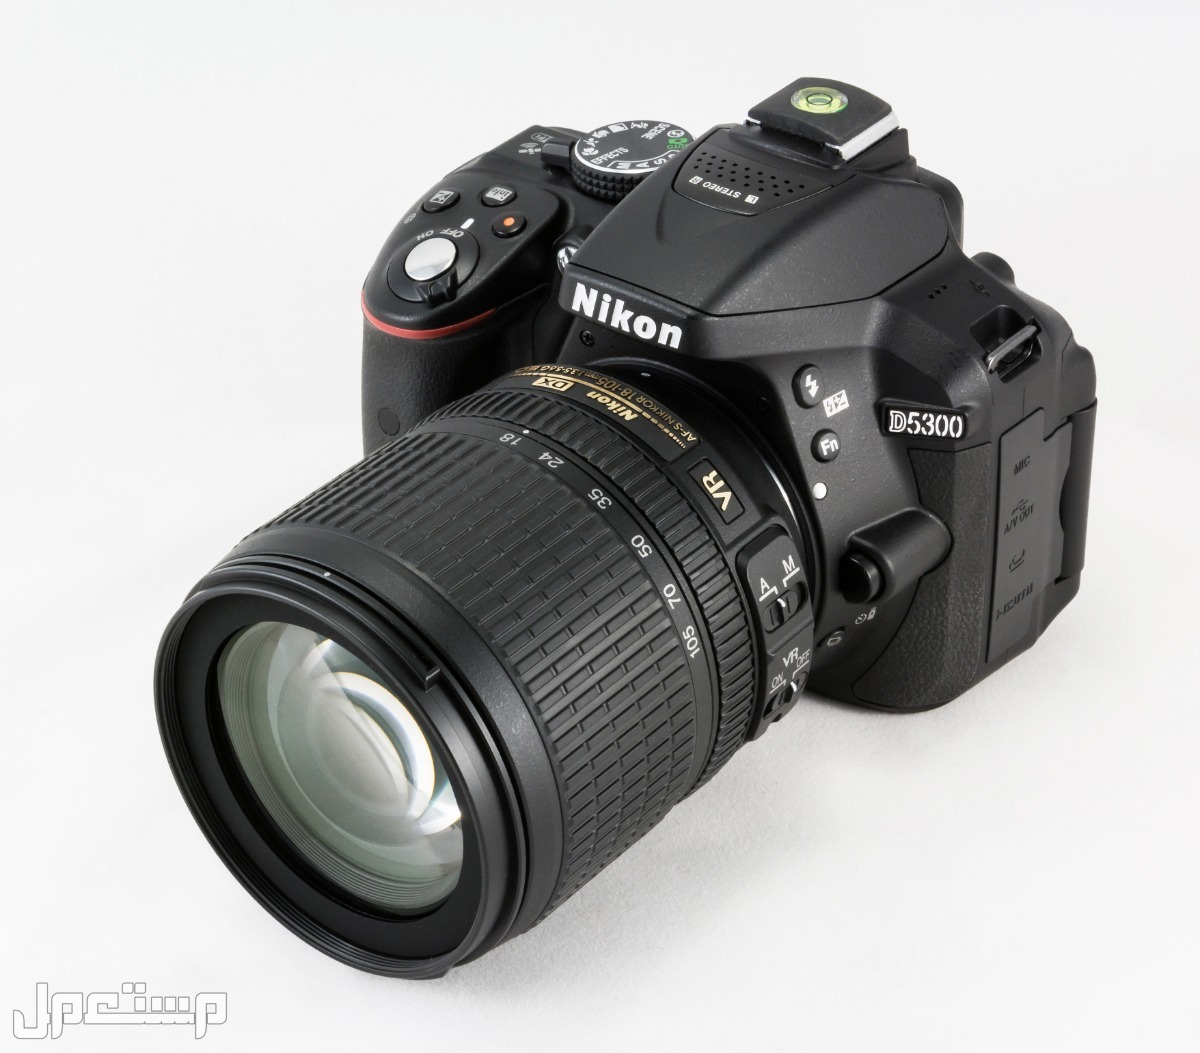 مواصفات ومميزات وأسعار أفضل أنواع كاميرات نيكون للمحترفين في السودان كاميرا Nikon D5300